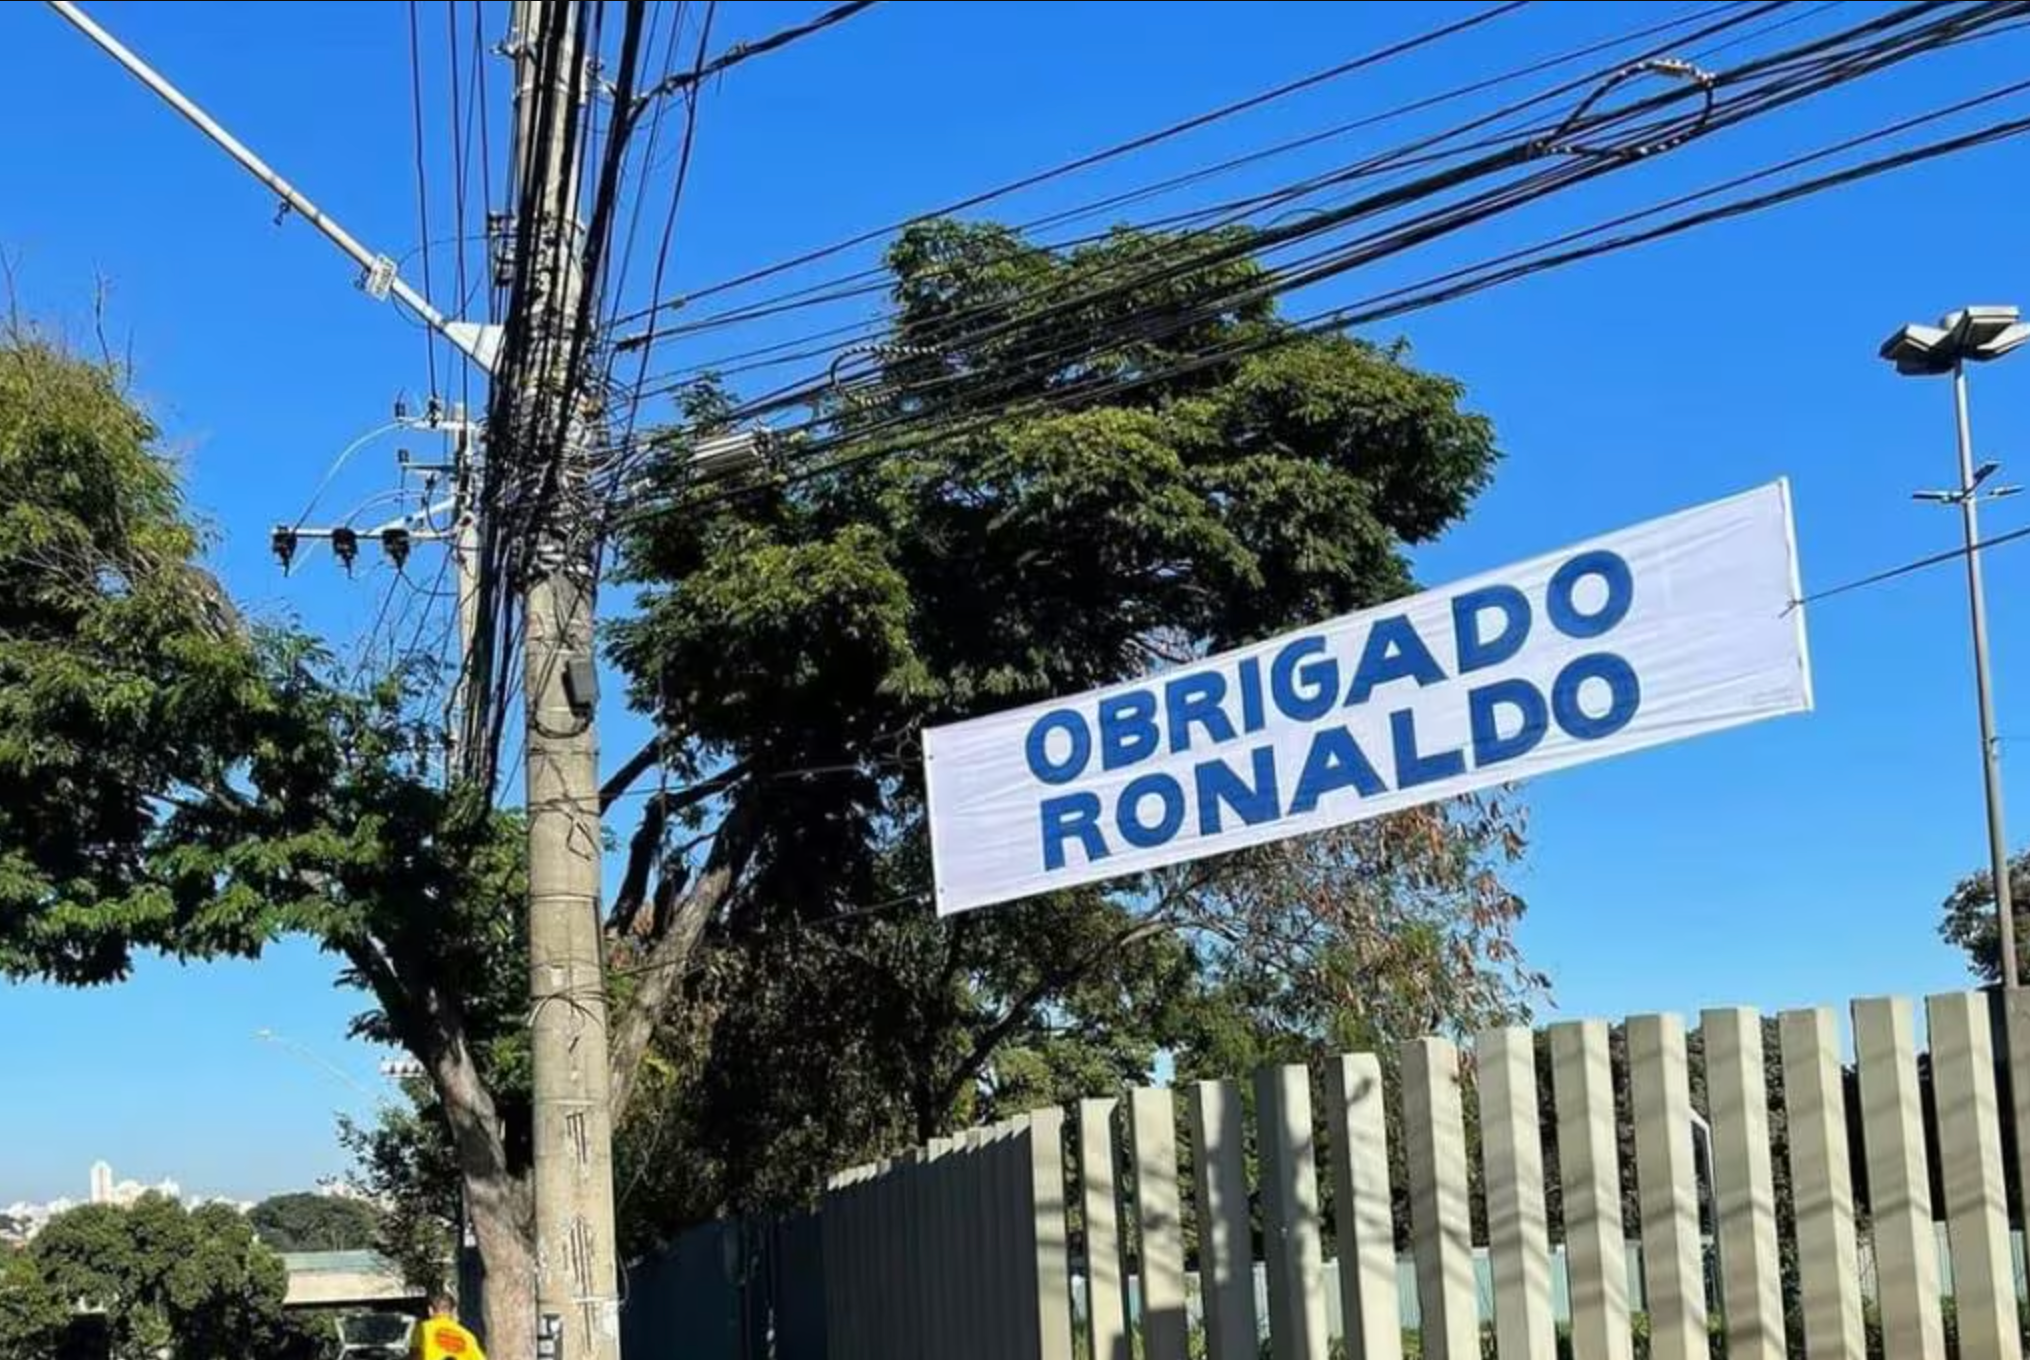 Faixa nos arredores do Mineirão diz "Obrigado Ronaldo" 